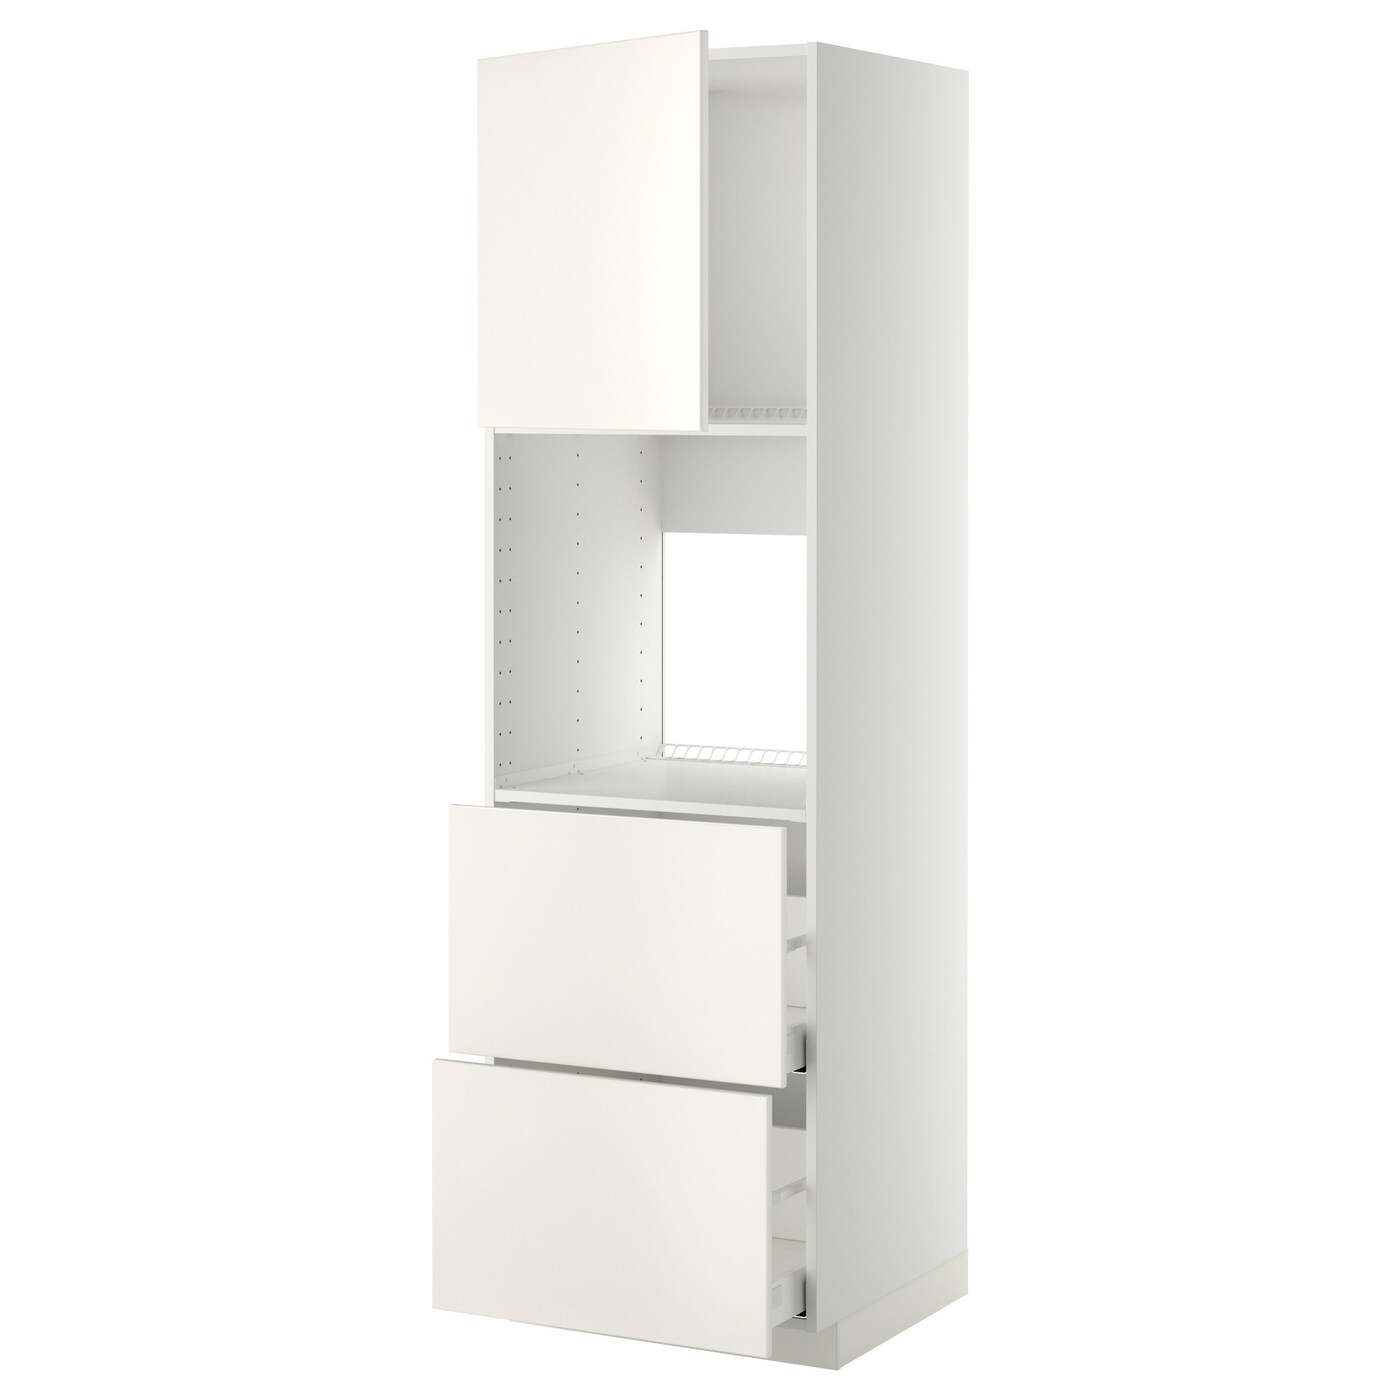 Модульный шкаф - METOD / MAXIMERA IKEA/ МЕТОД/МАКСИМЕРА  ИКЕА, 208х60 см, белый